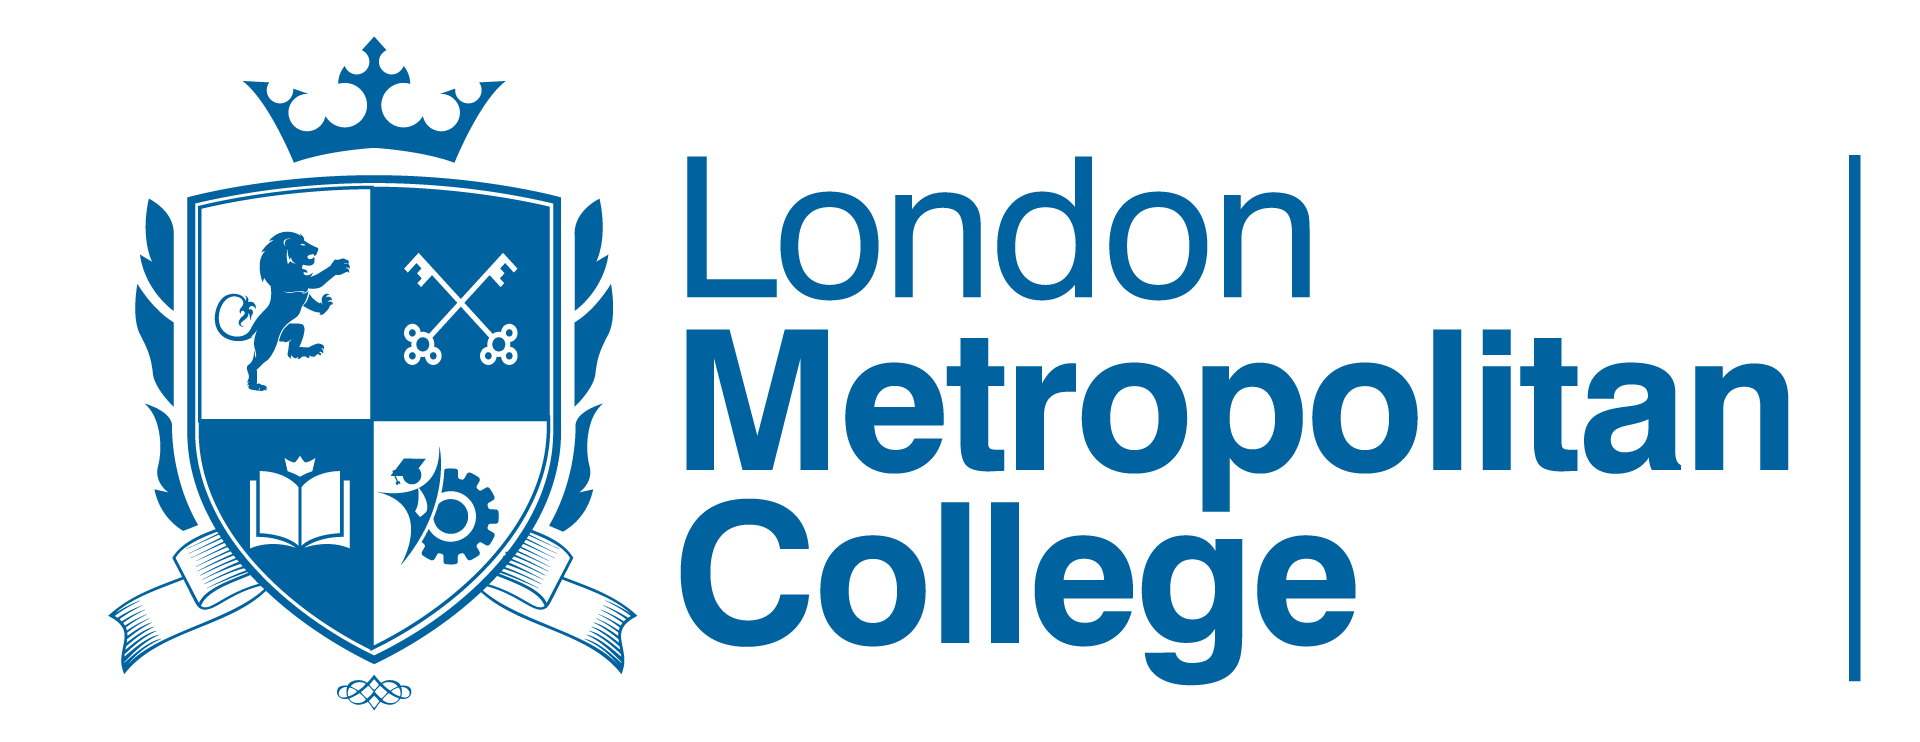 London Metropotilan College